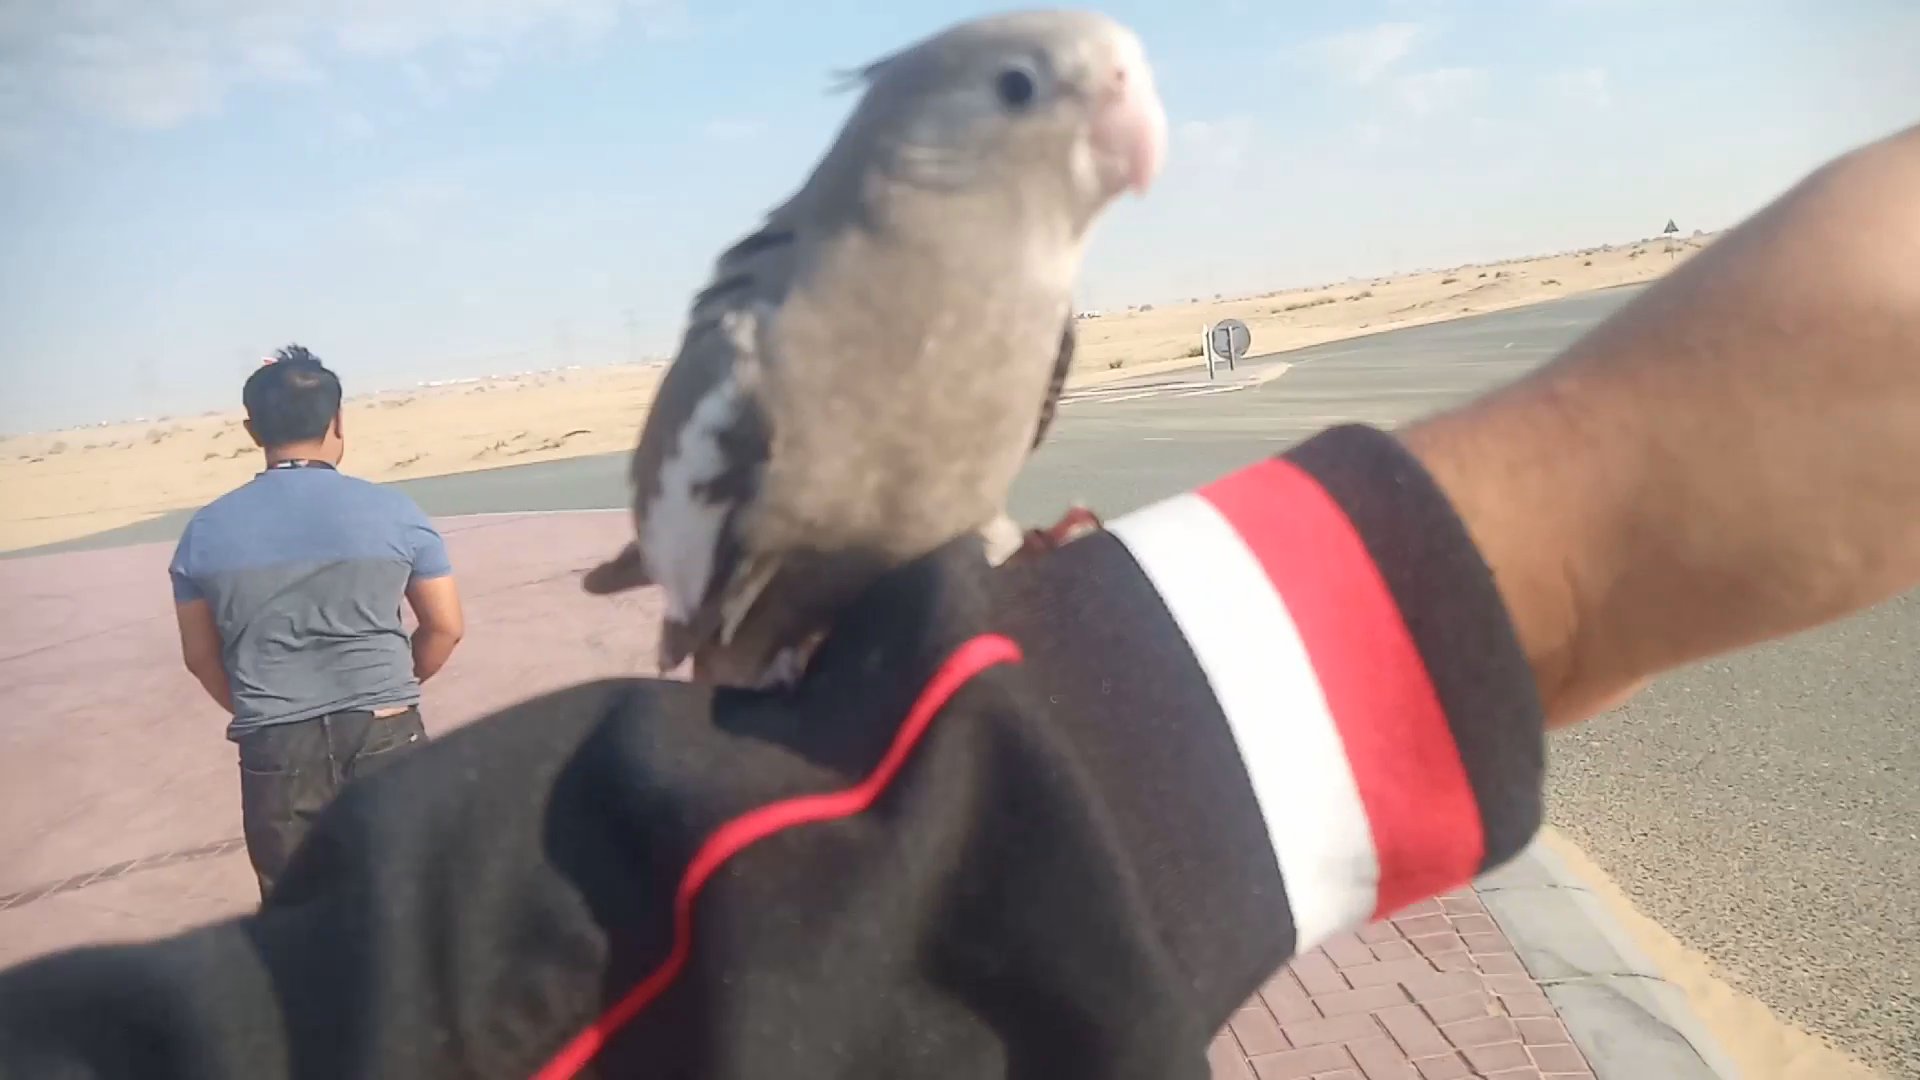 2 Outdoor free flight cockatiel in Dubai